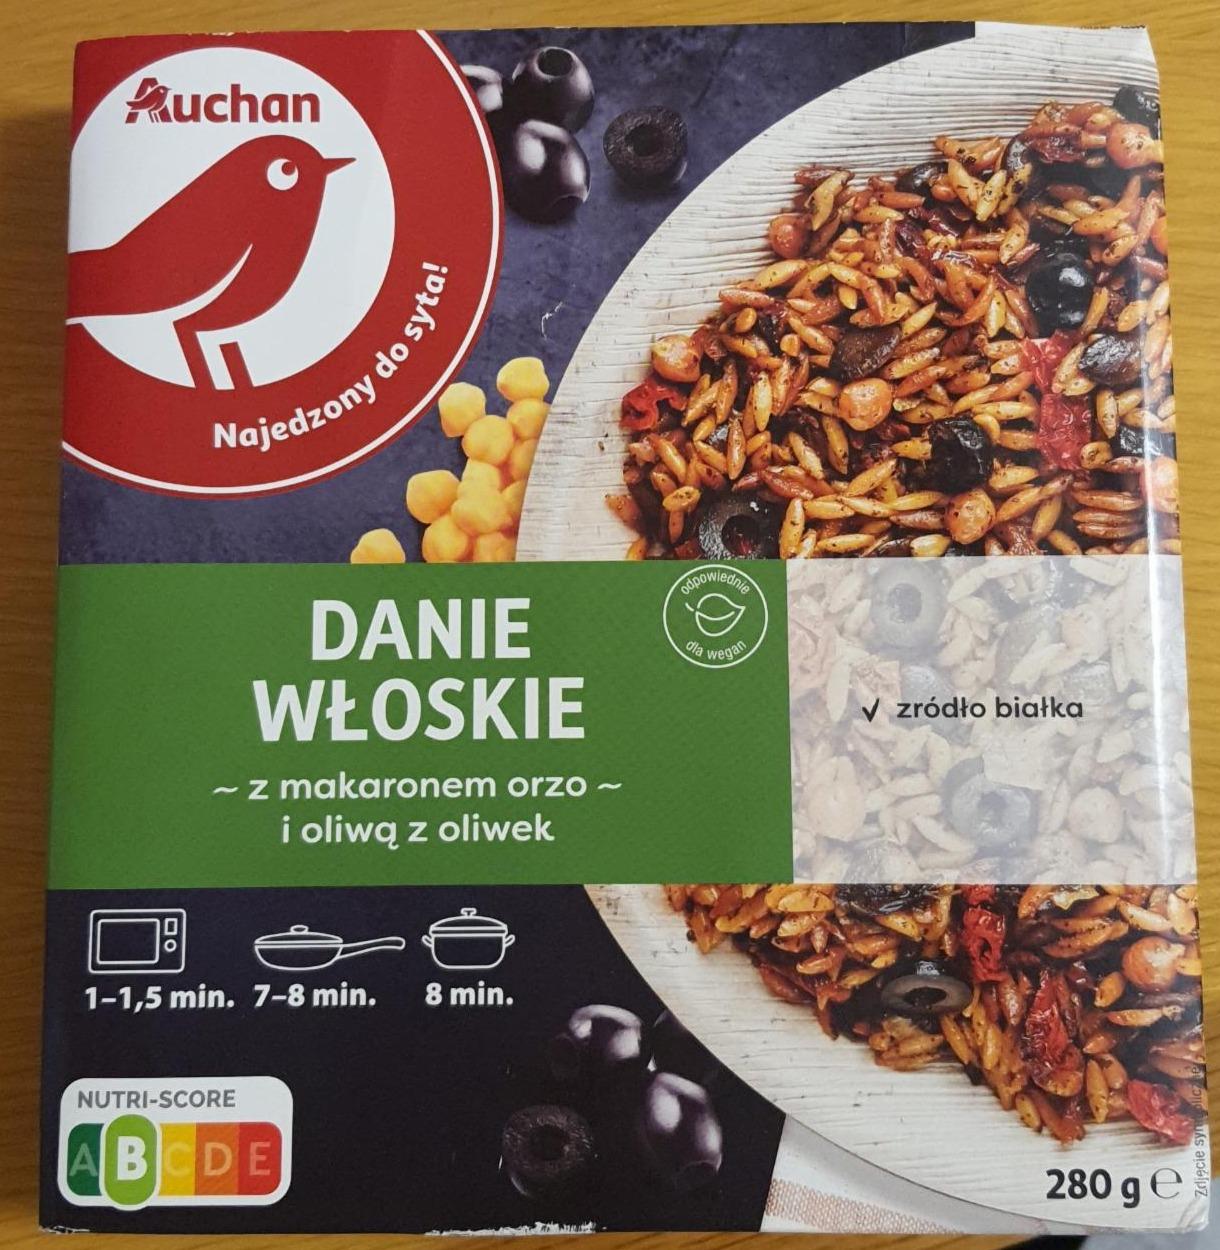 Zdjęcia - Danie wloskie z makaronem orzo i oliwą z oliwek Auchan